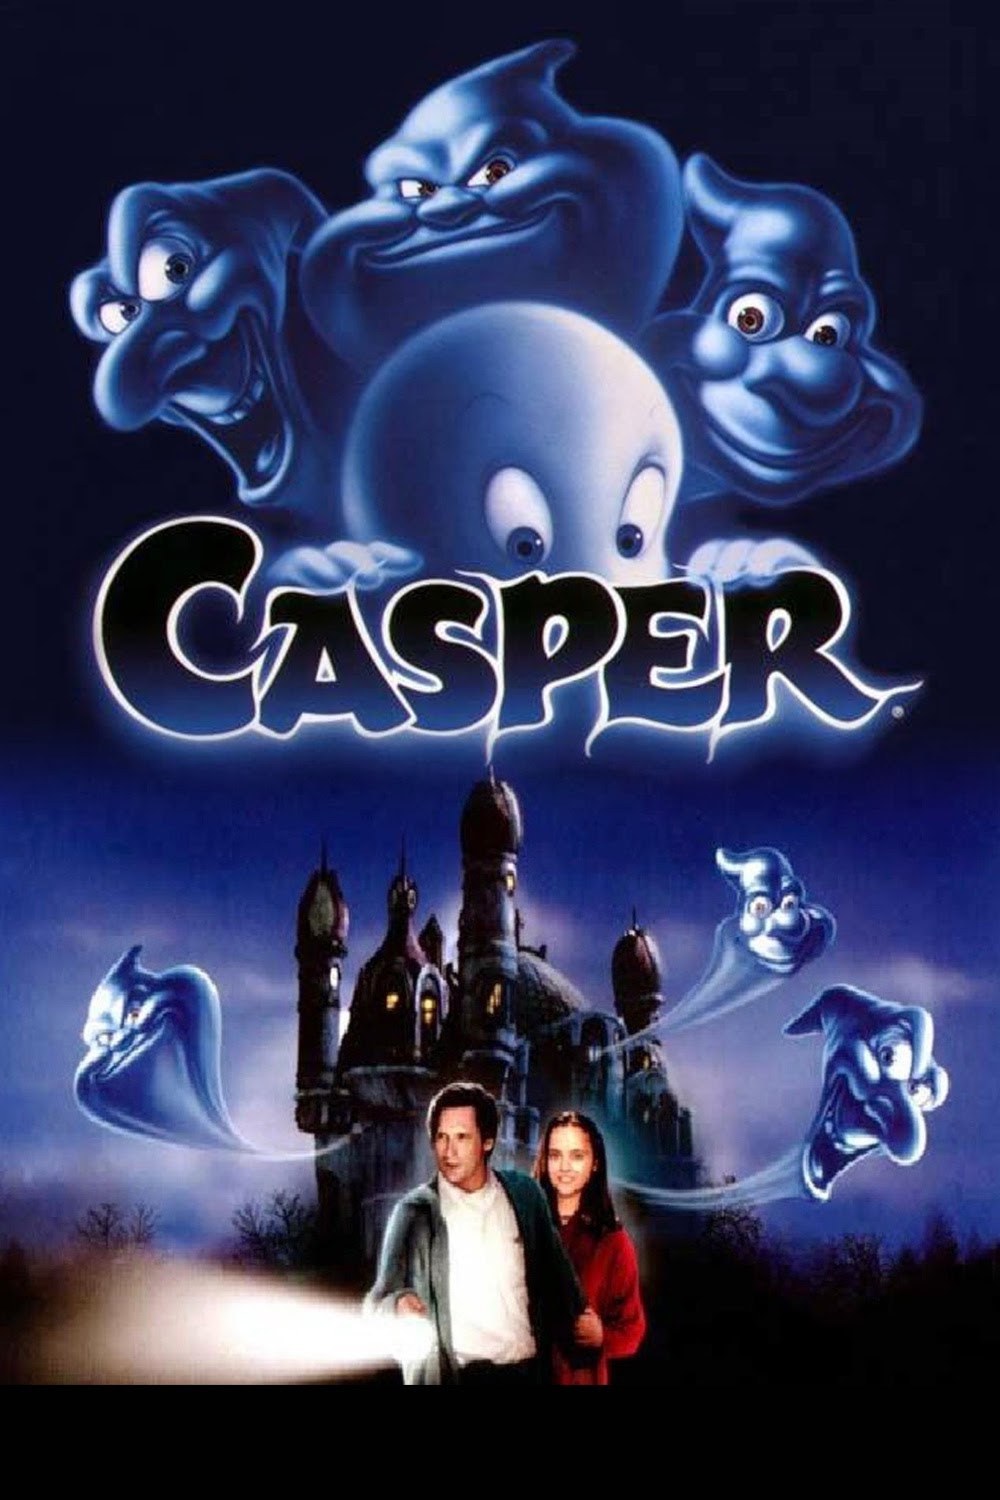  Casper  1995 BluRay 720p Full Movie  Subtitle Indonesia 